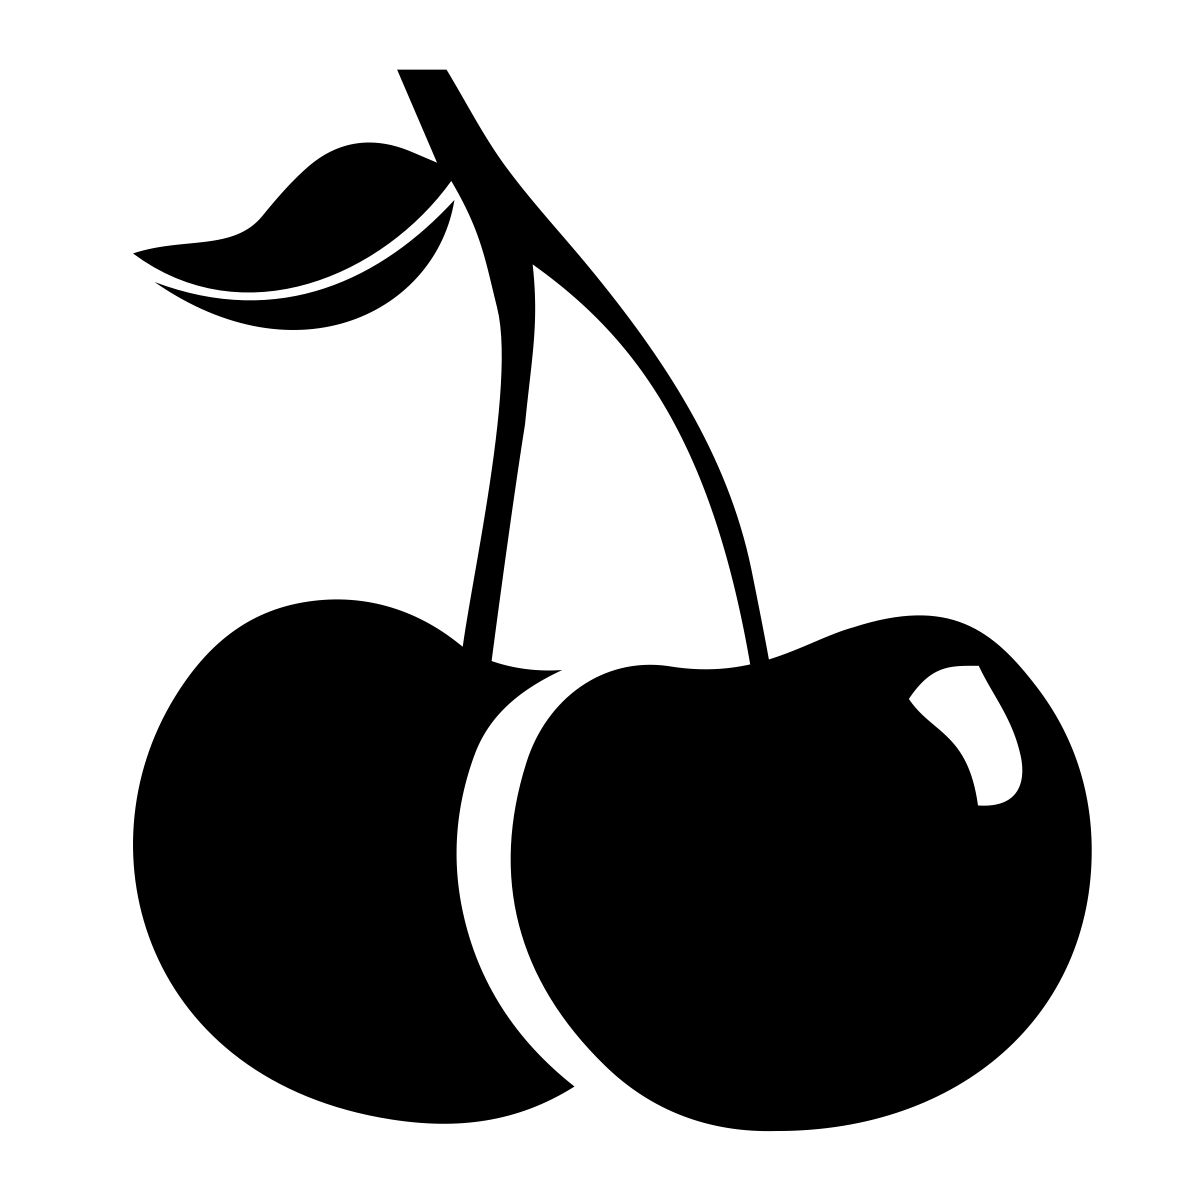 تصویر سیاه سفید HD از آلبالو برای تابلو مغازه